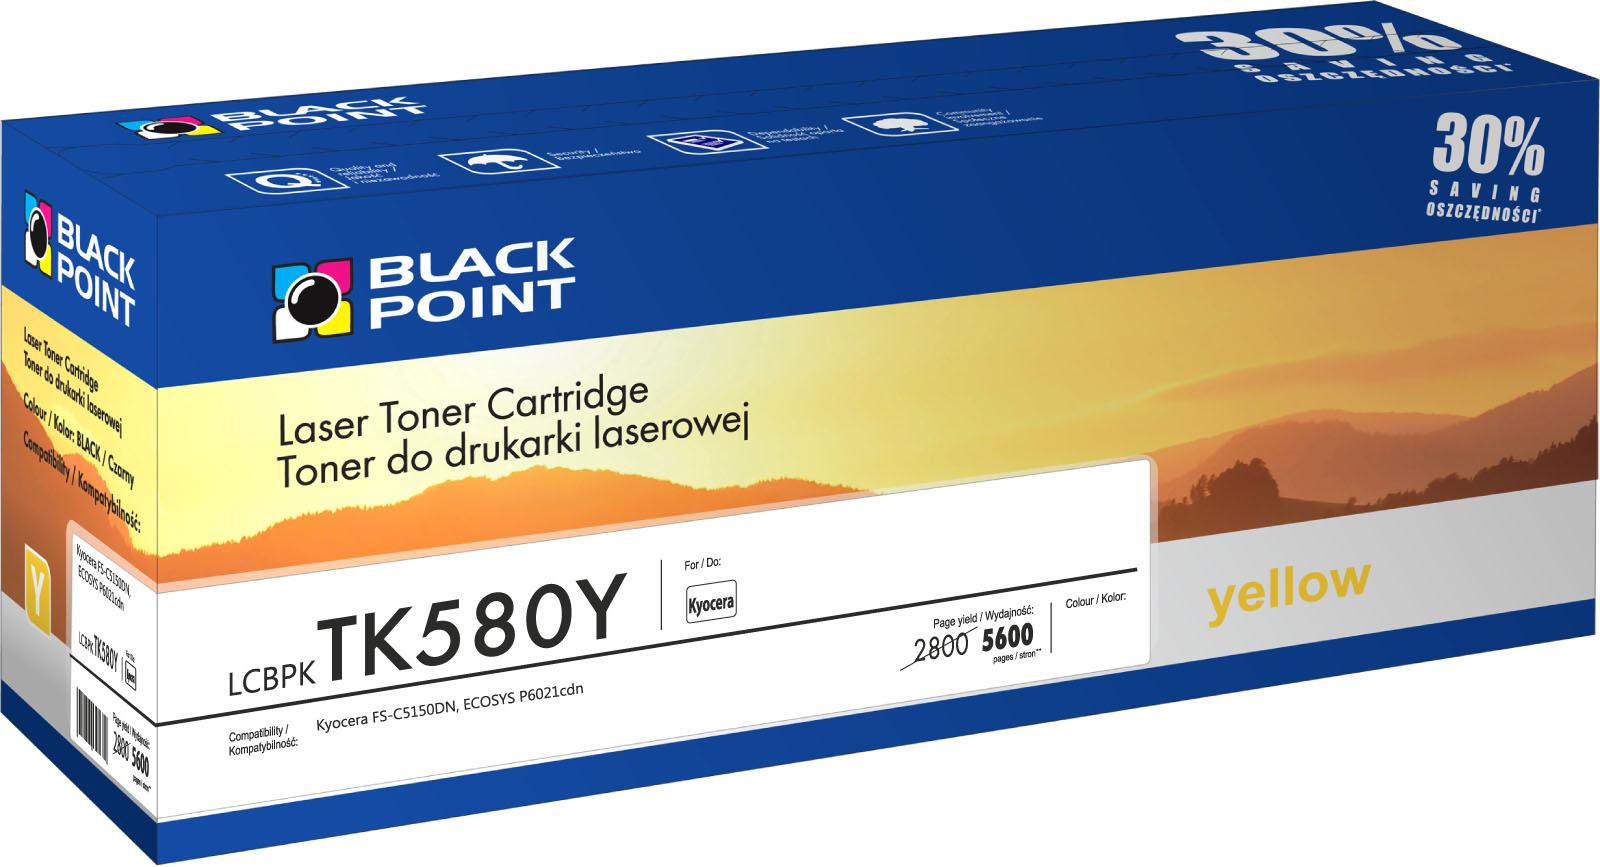 CMYK - Black Point toner LCBPKTK580Y zastpuje Kyocera TK-580Y, ty